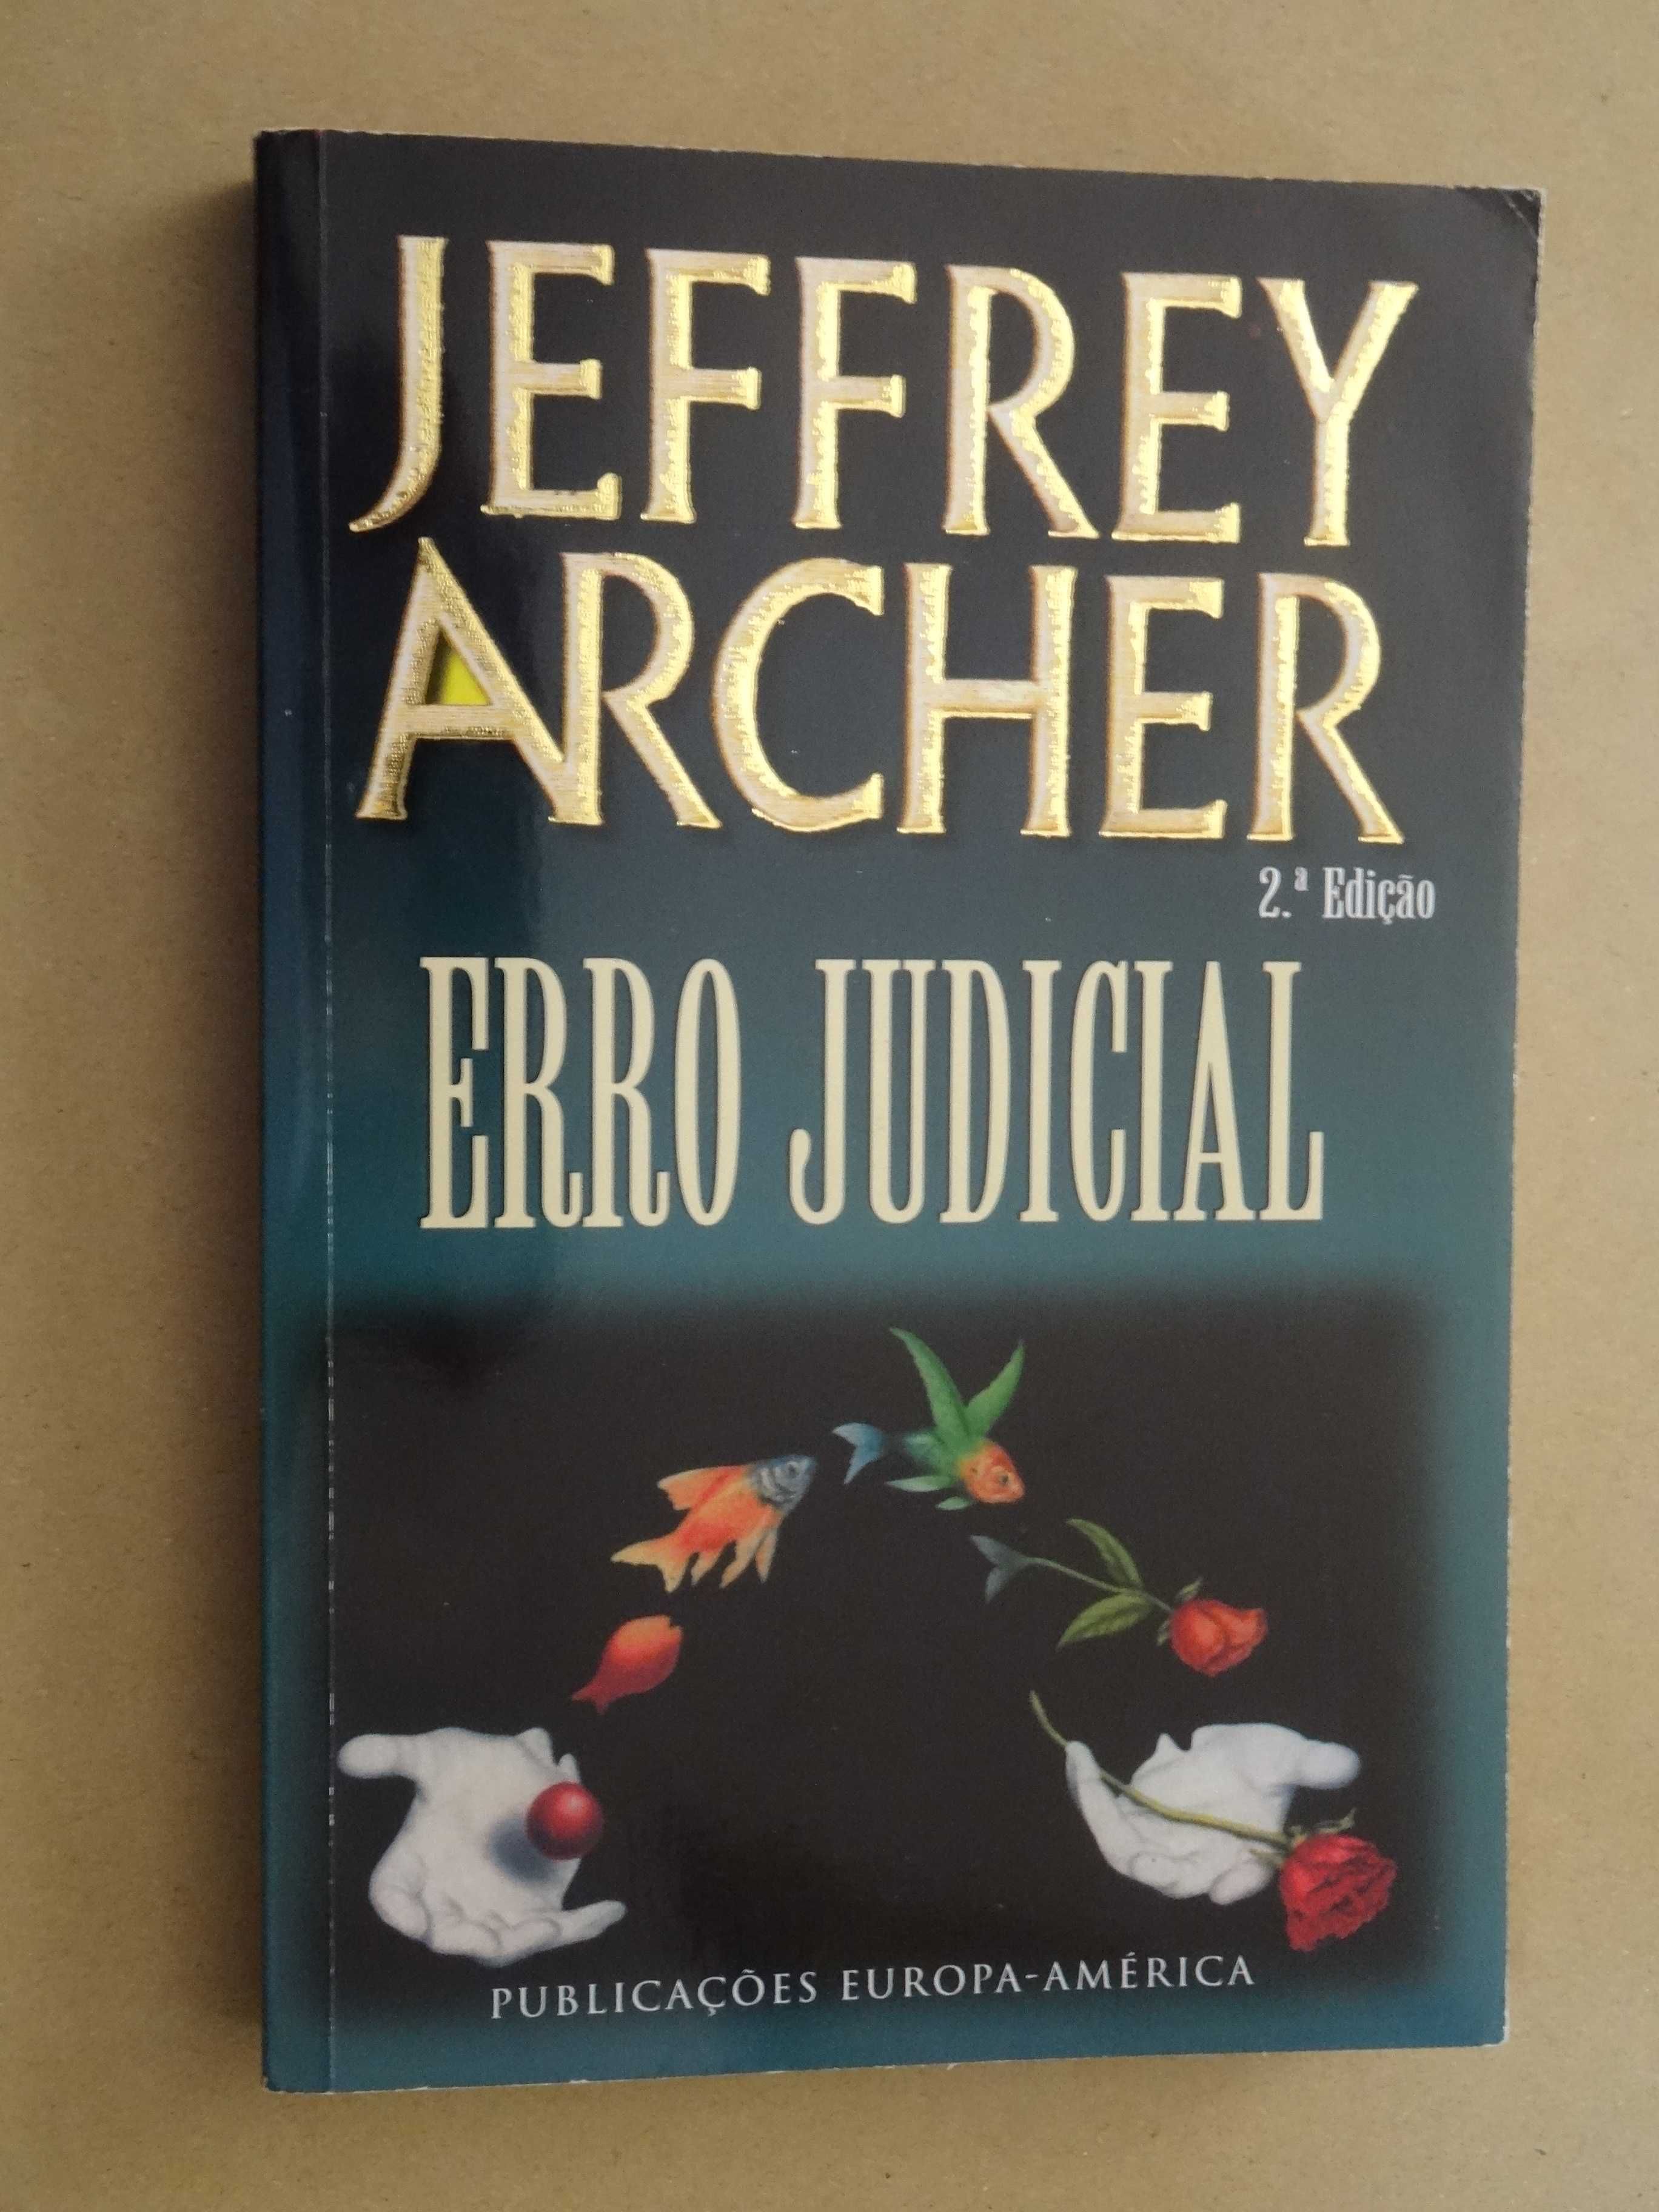 Erro Judicial de Jeffrey Archer